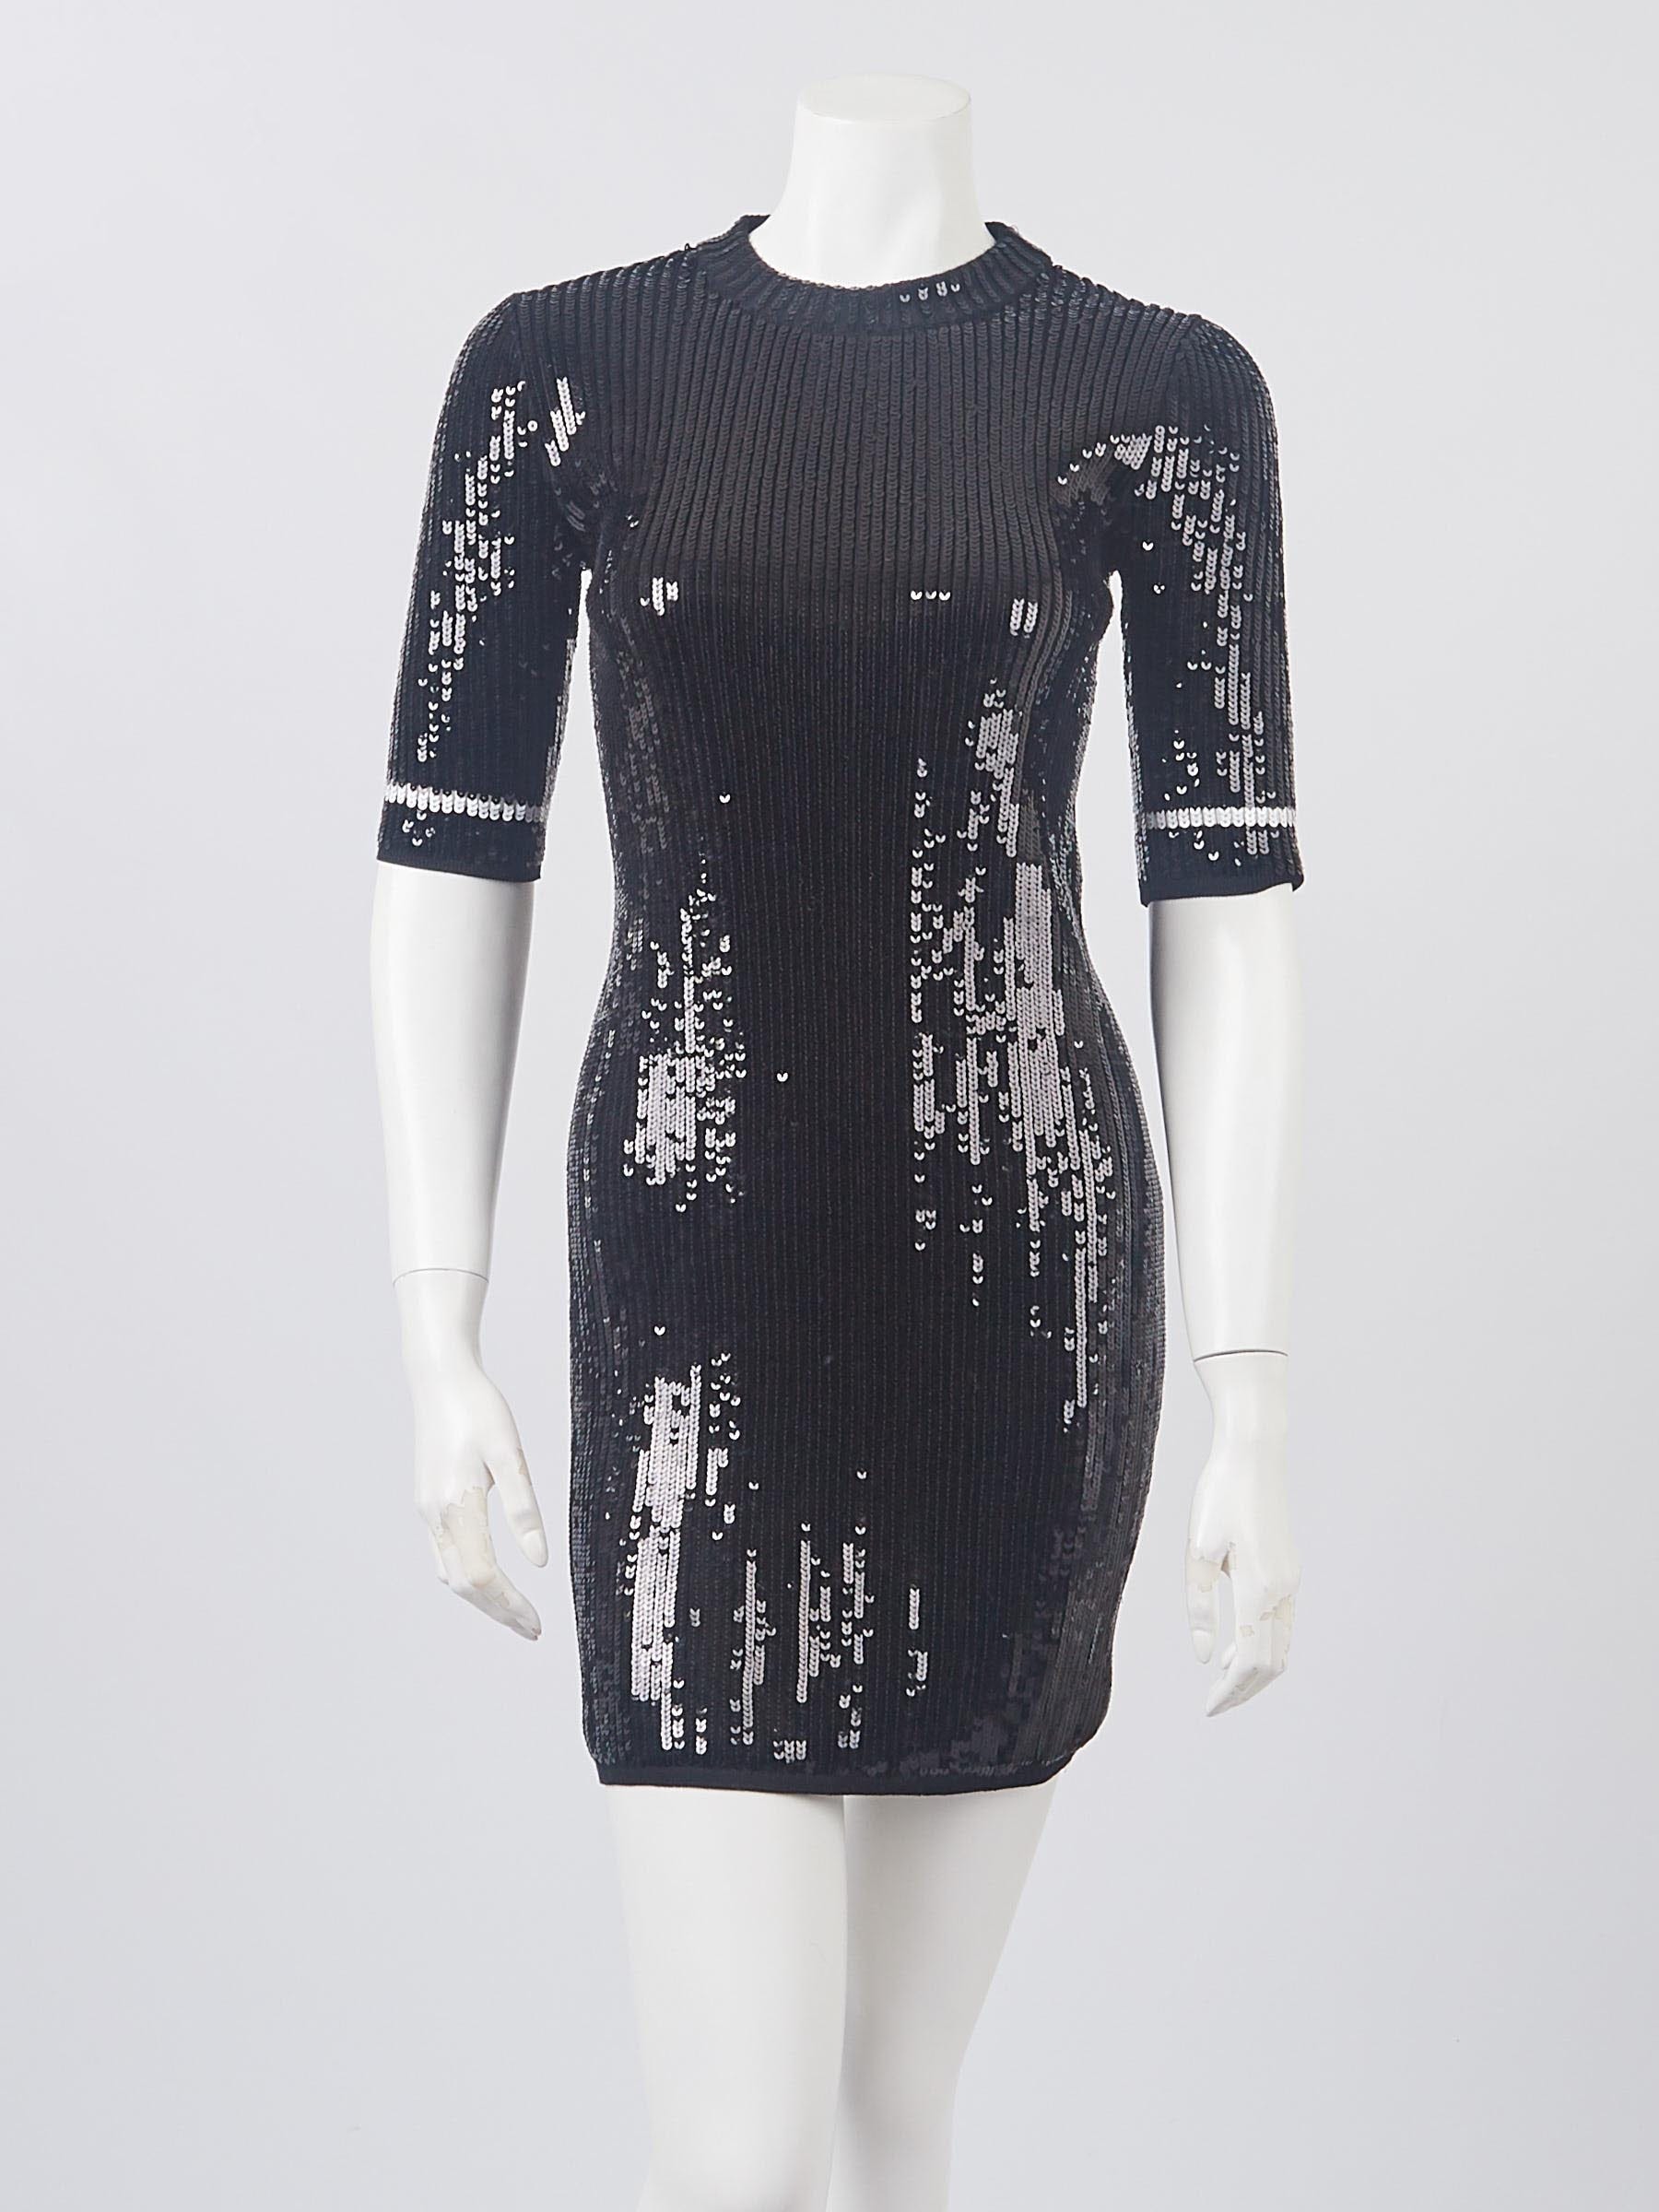 Louis Vuitton - Authenticated Dress - Cotton Black Plain for Women, Very Good Condition